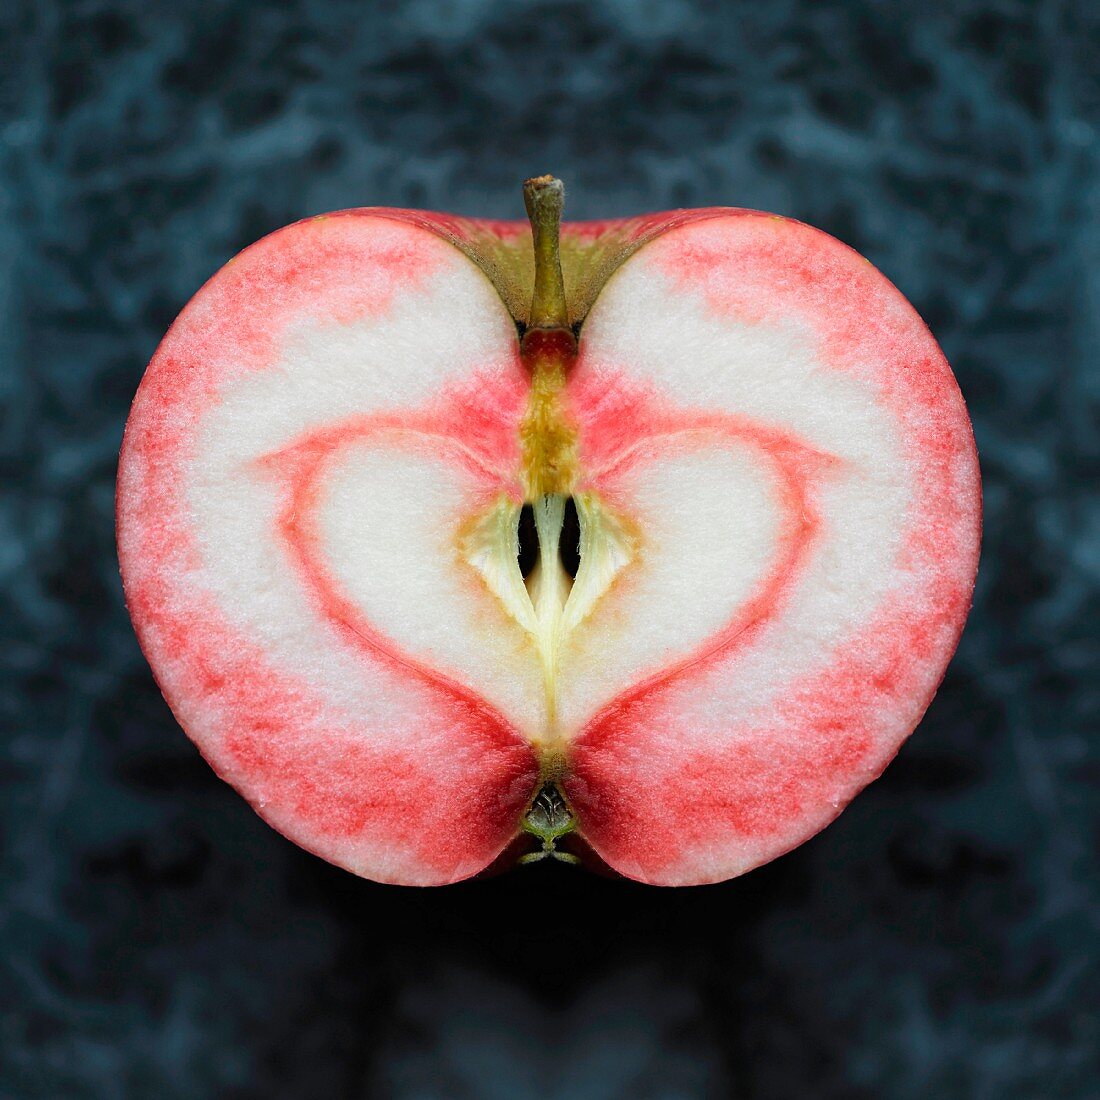 Apfelhälfte mit herzförmigem Muster im Fruchtfleisch